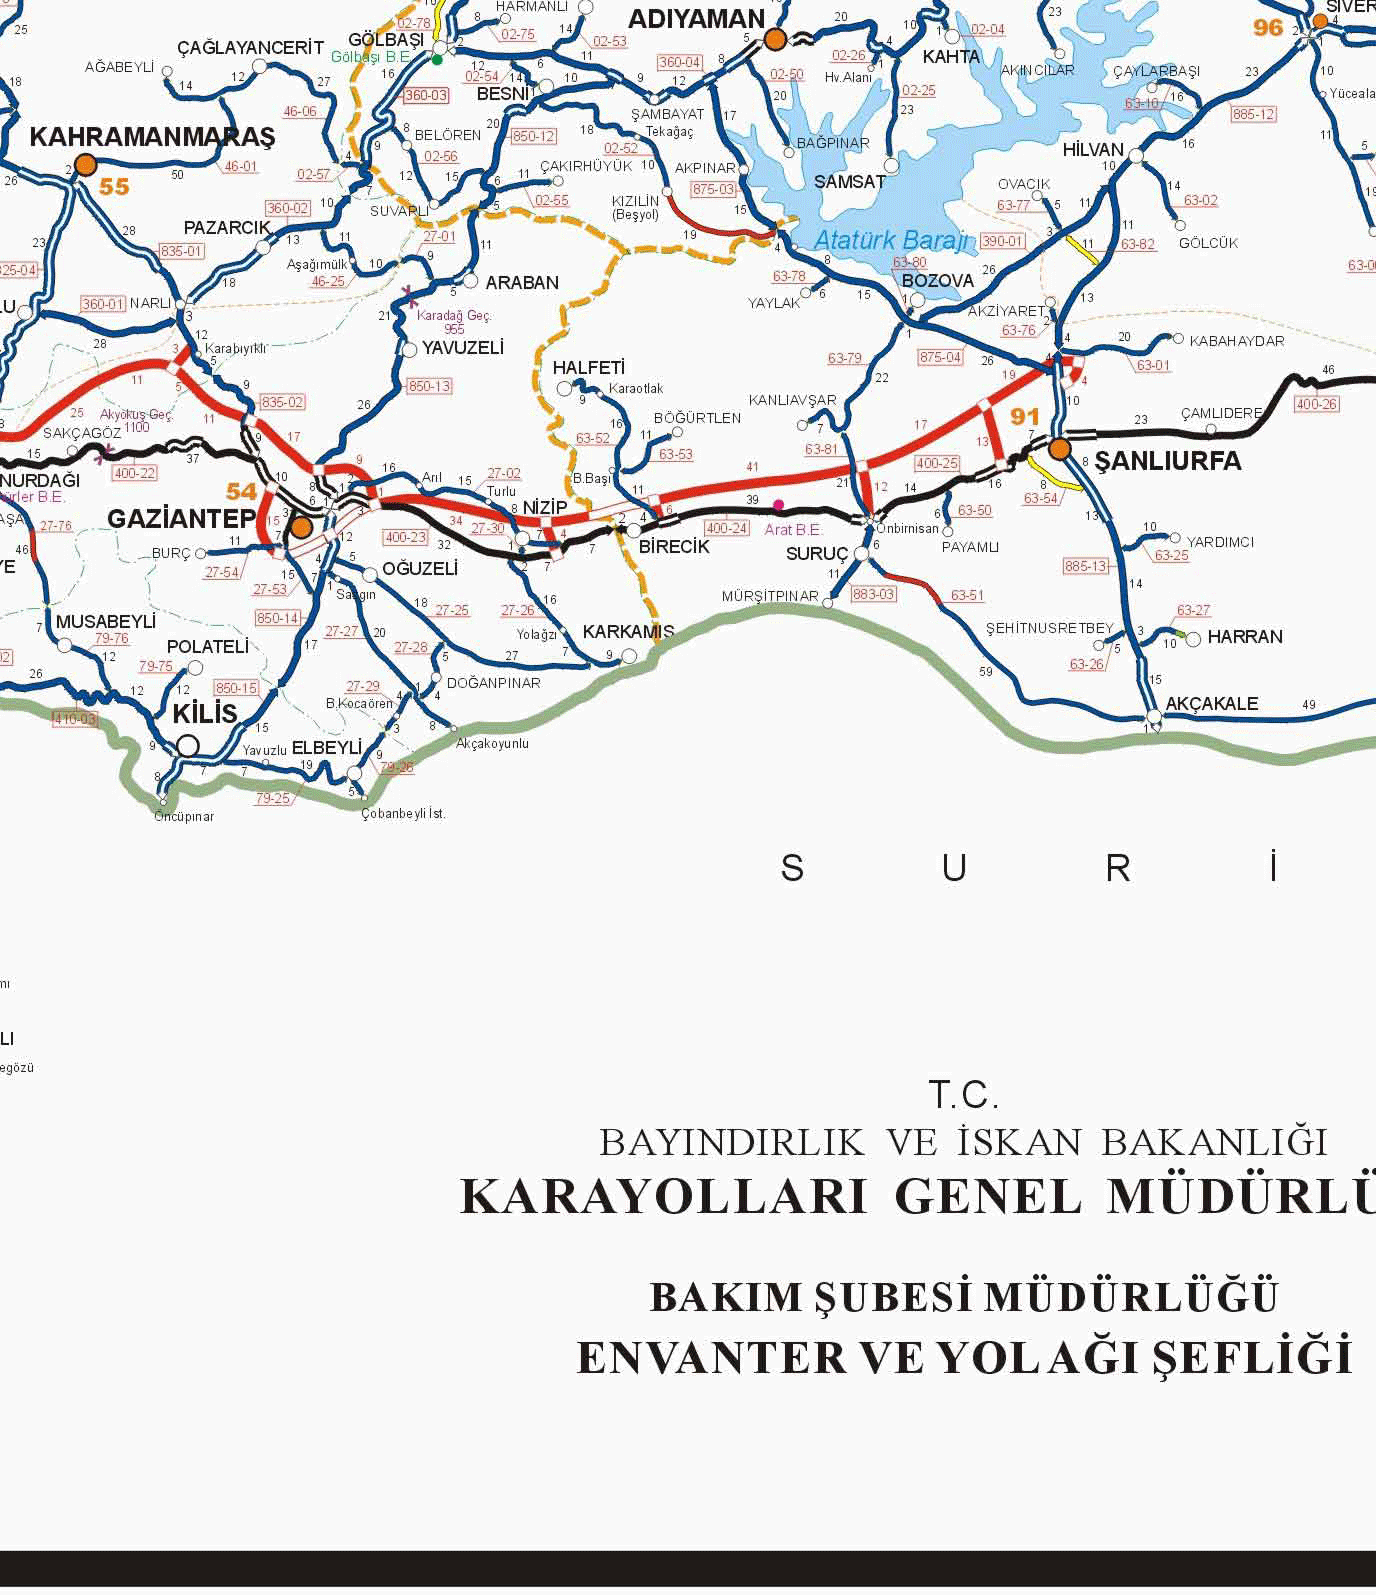 Turkiye Karayollari Haritasi